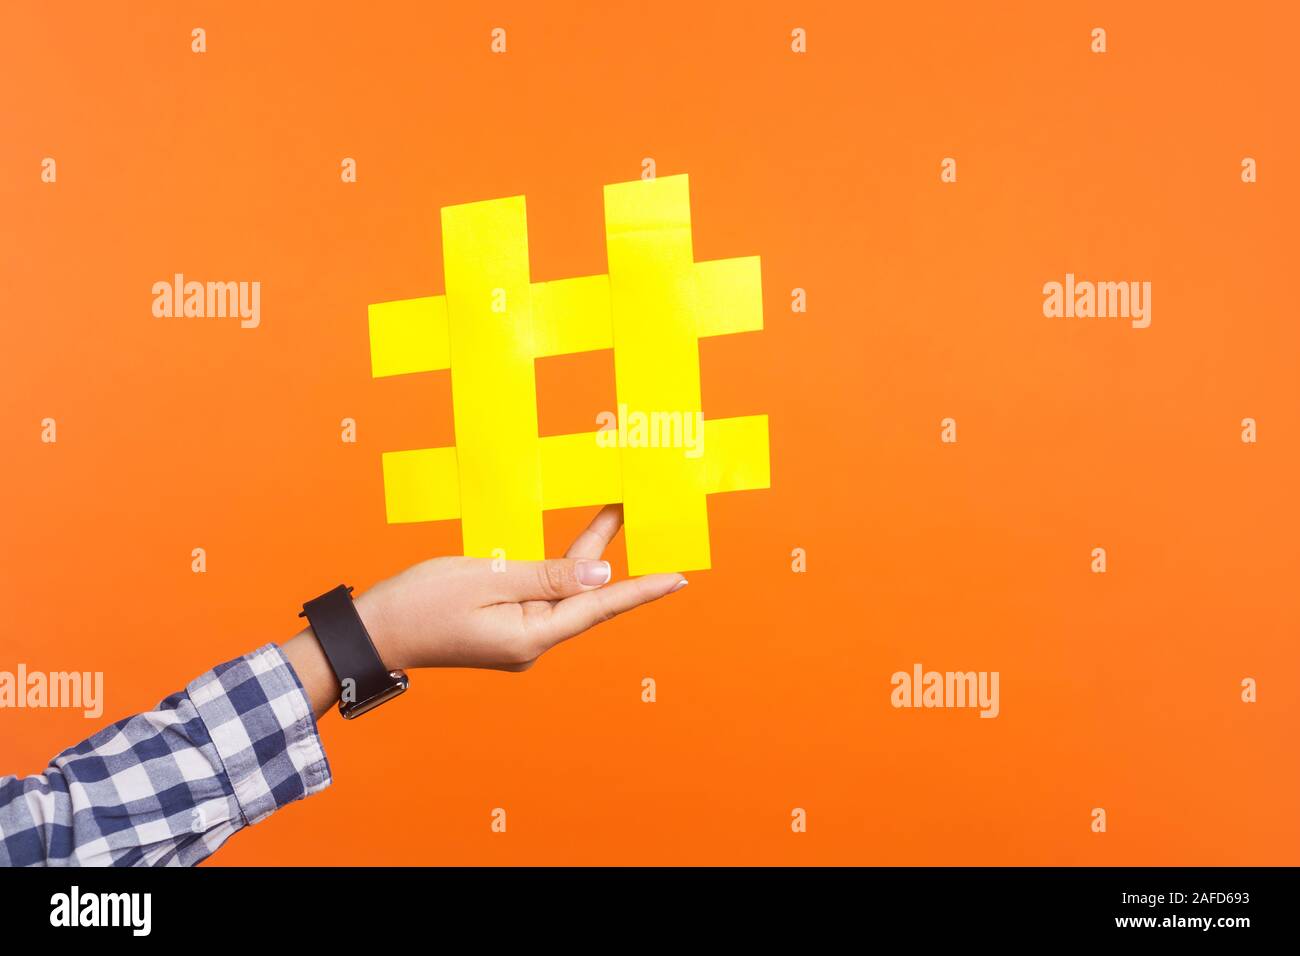 Nahaufnahme der weiblichen Hand große große gelbe hashtag Zeichen, Konzept der trendigen social media Beiträge und Blogs, virale Web Content, Internet Promotion Stockfoto